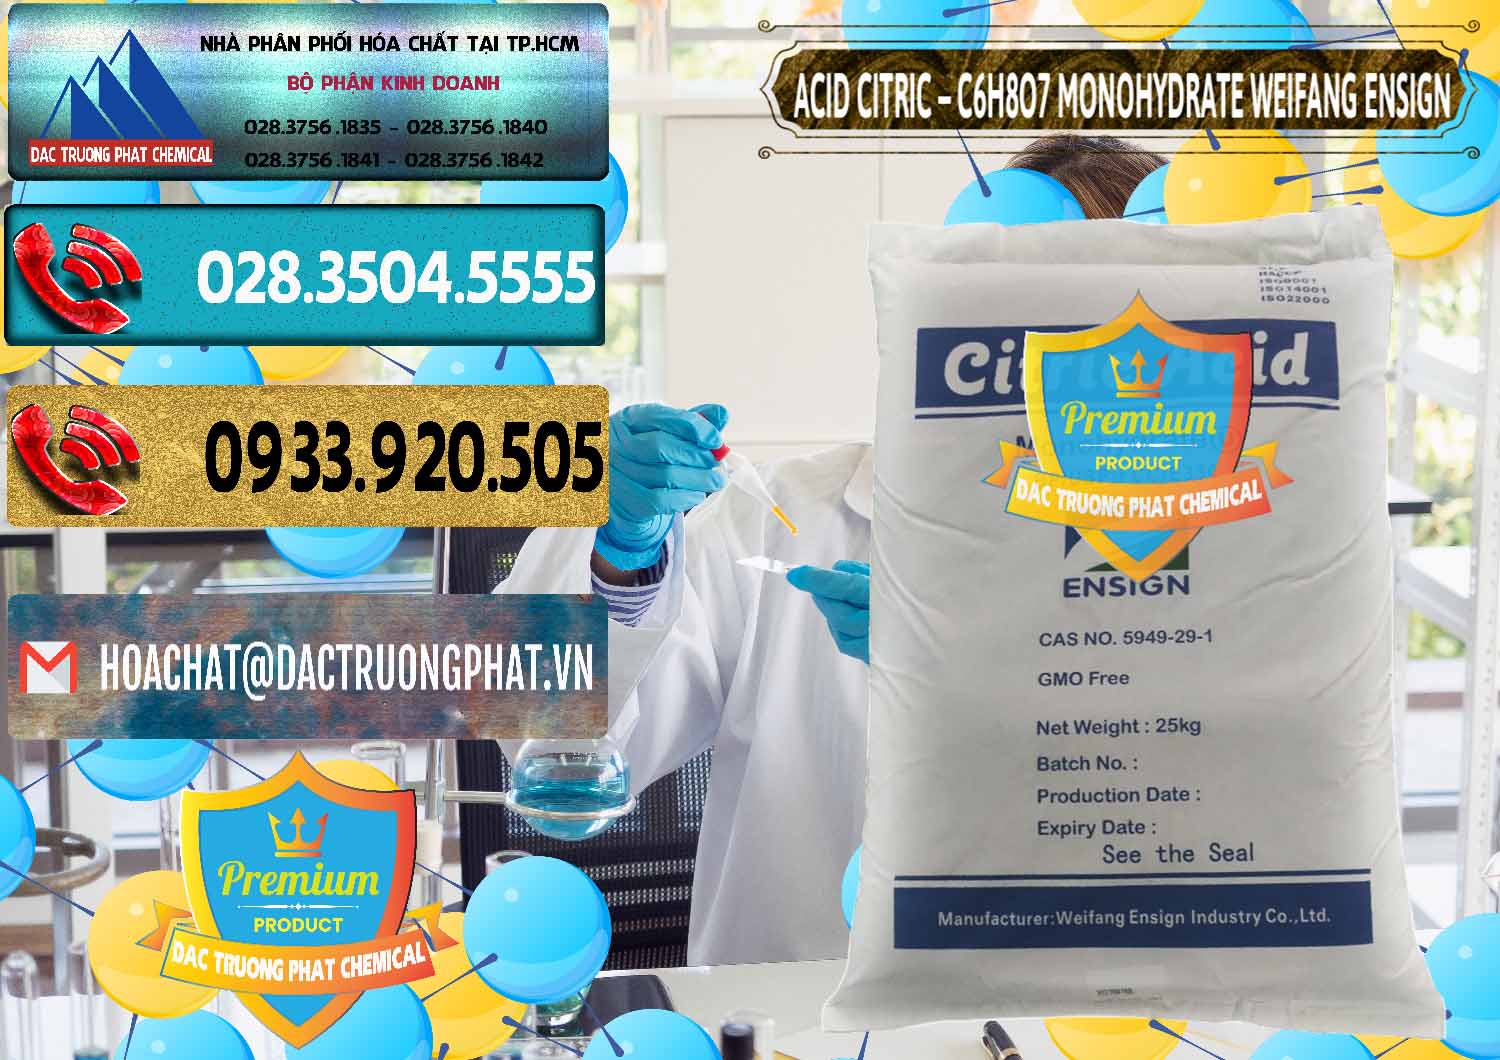 Cty bán - cung cấp Acid Citric - Axit Citric Monohydrate Weifang Trung Quốc China - 0009 - Nơi cung cấp và phân phối hóa chất tại TP.HCM - hoachatdetnhuom.com